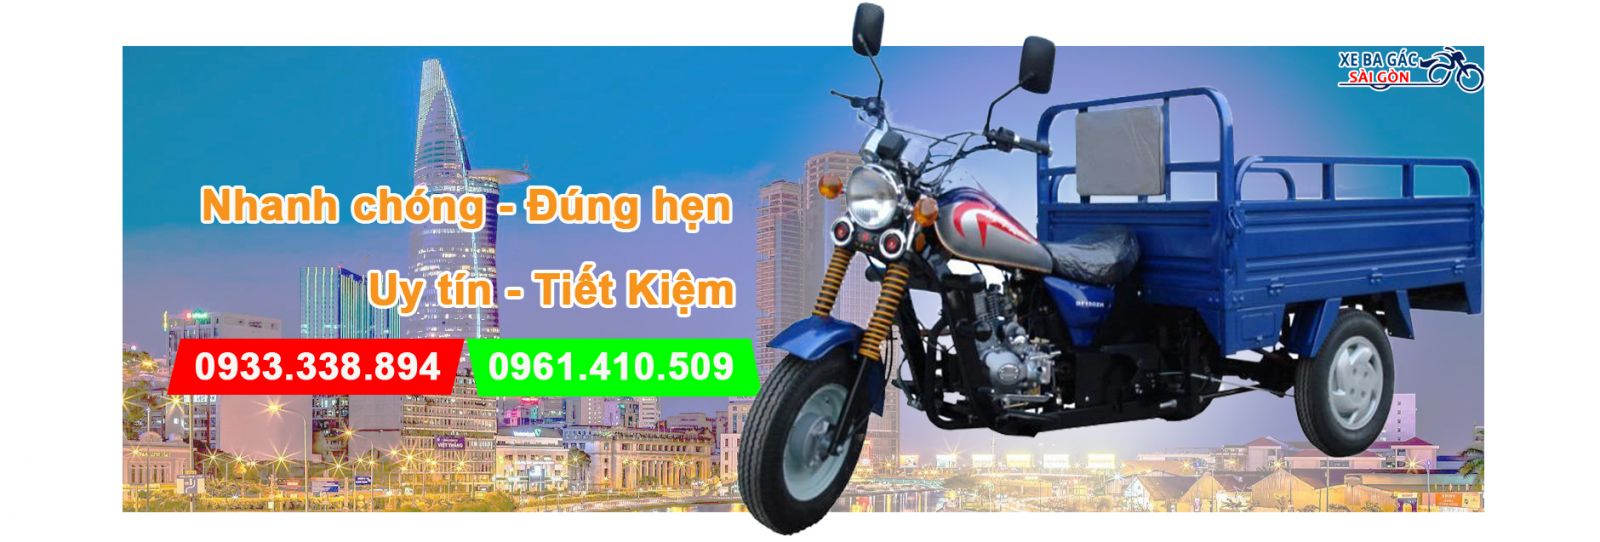 Giới thiệu về Xe ba gác Sài Gòn VN - 09333338894 - Số 5